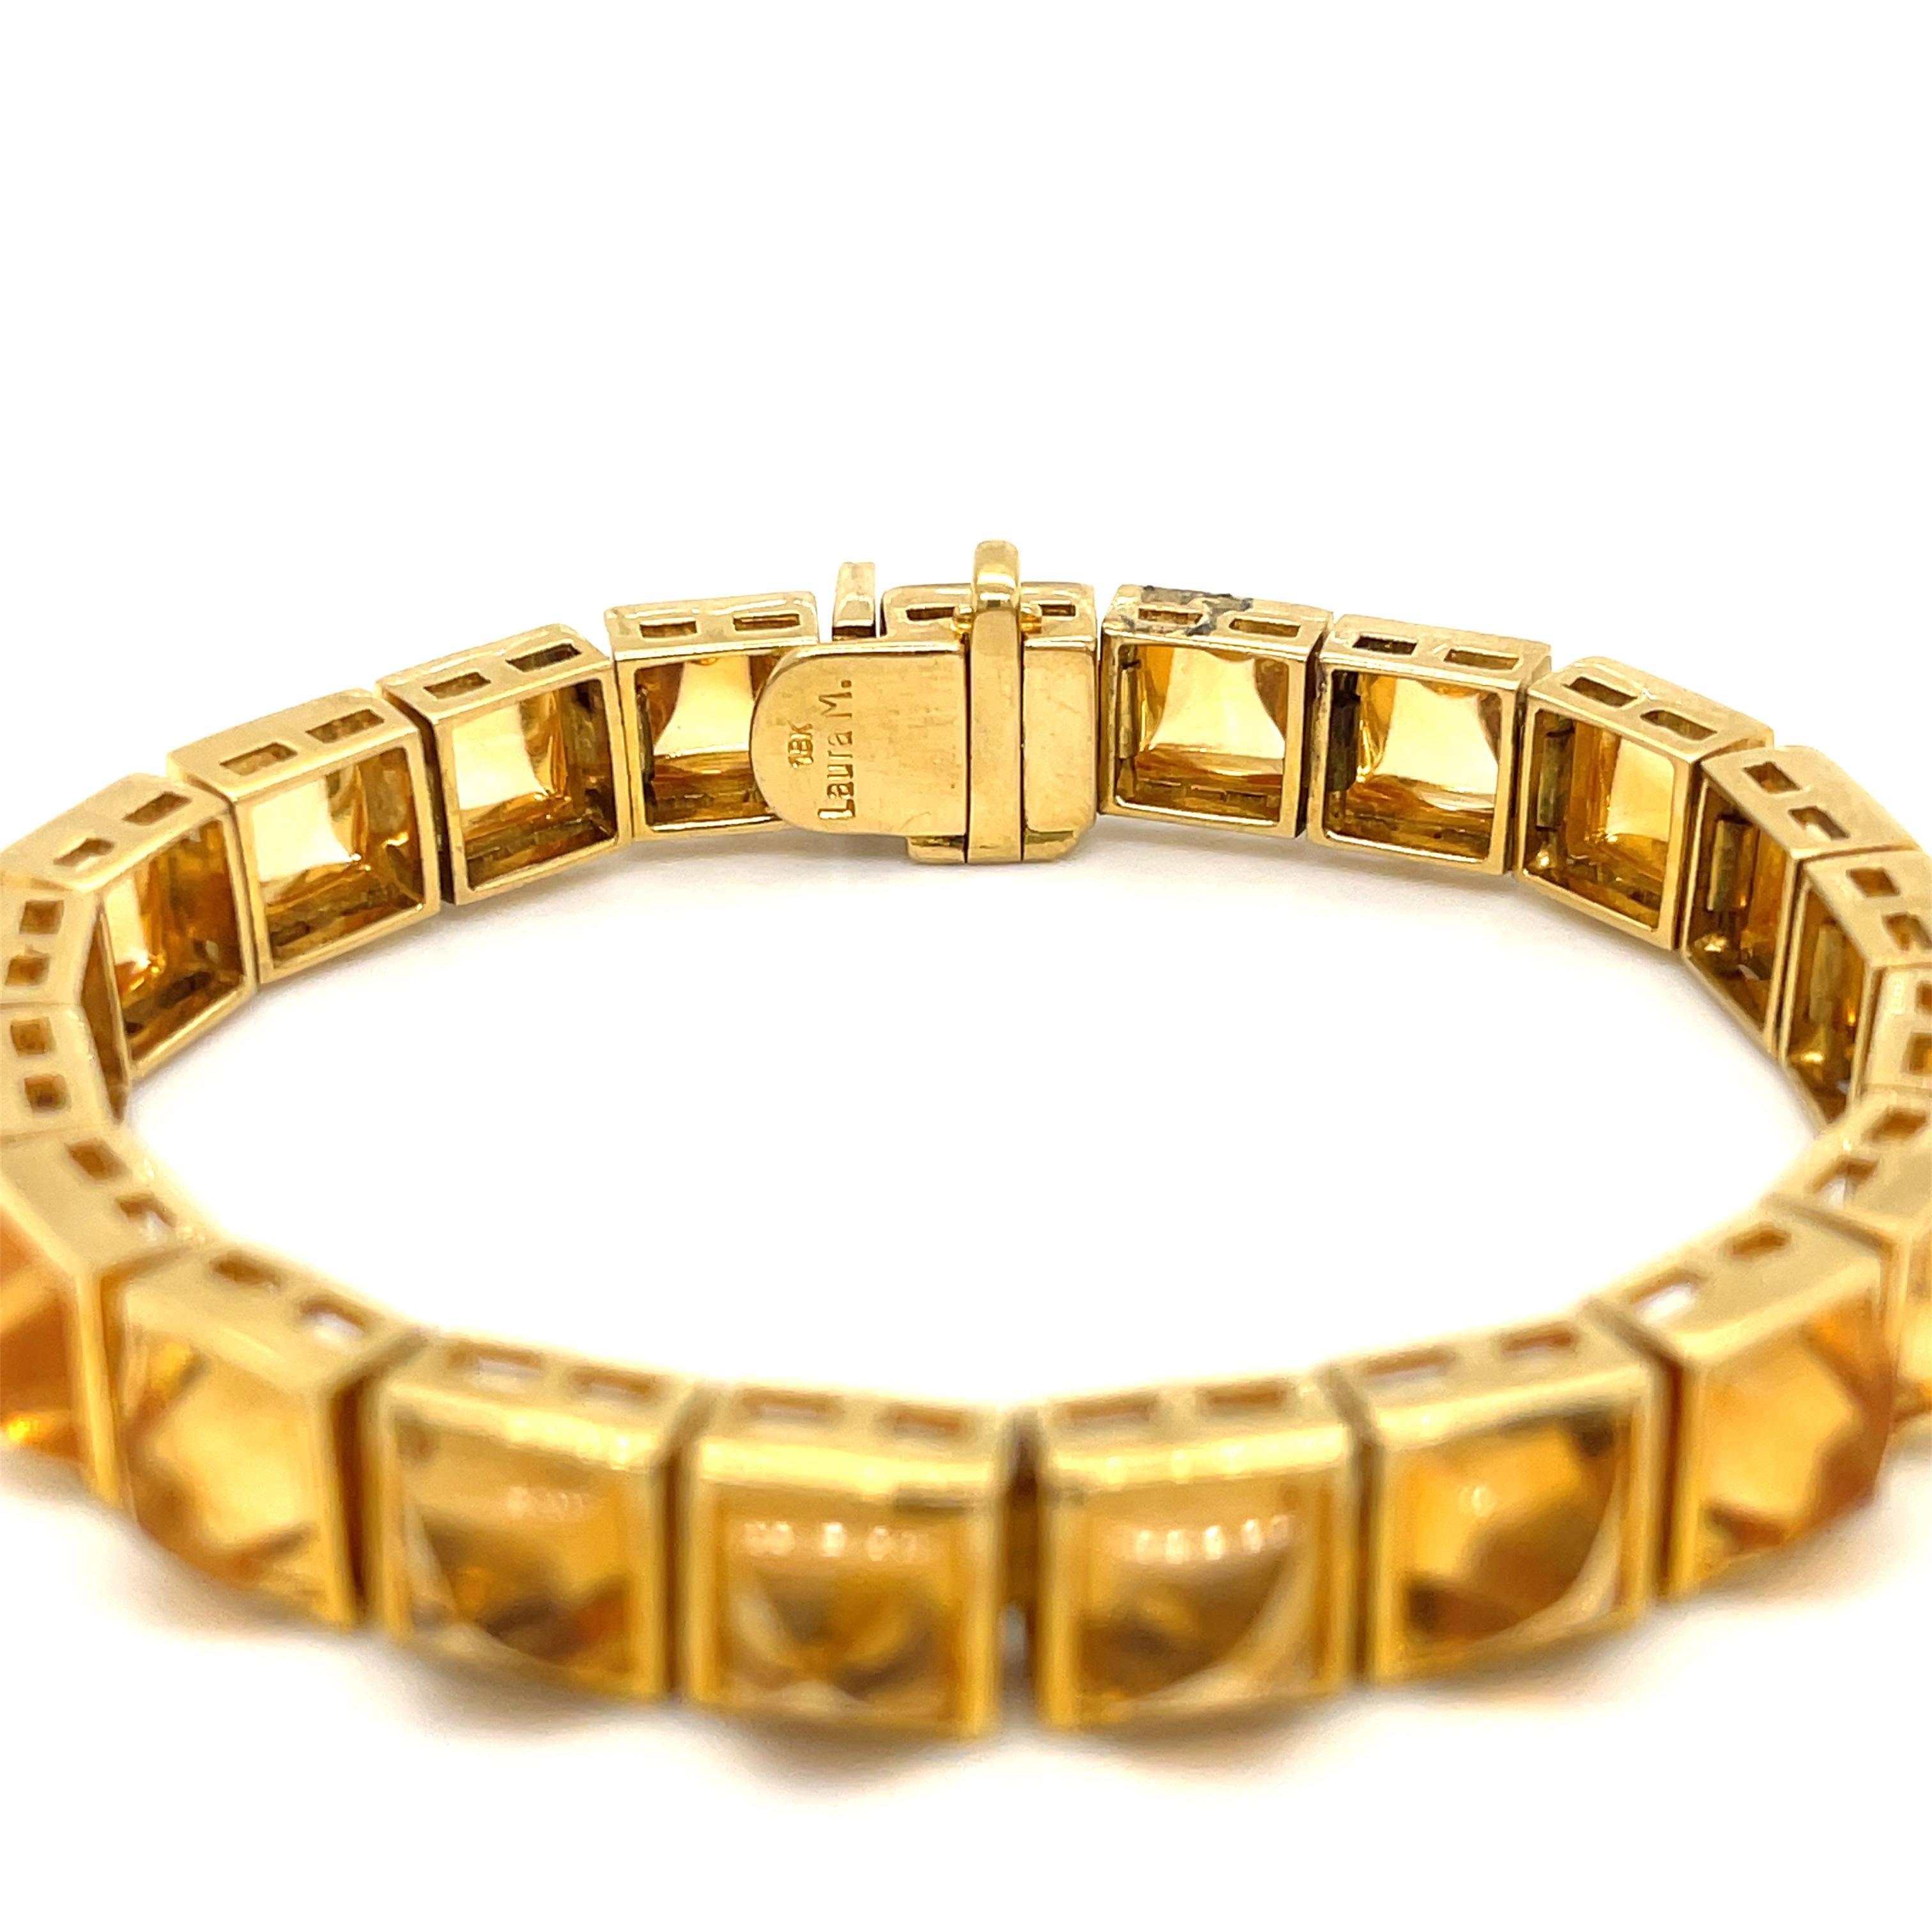 Laura Munder Citrin-Armband aus 18 Karat Gelbgold. Das Armband besteht aus 21 Zitrinen im Zuckerhut-Cabochon-Schliff. 
7